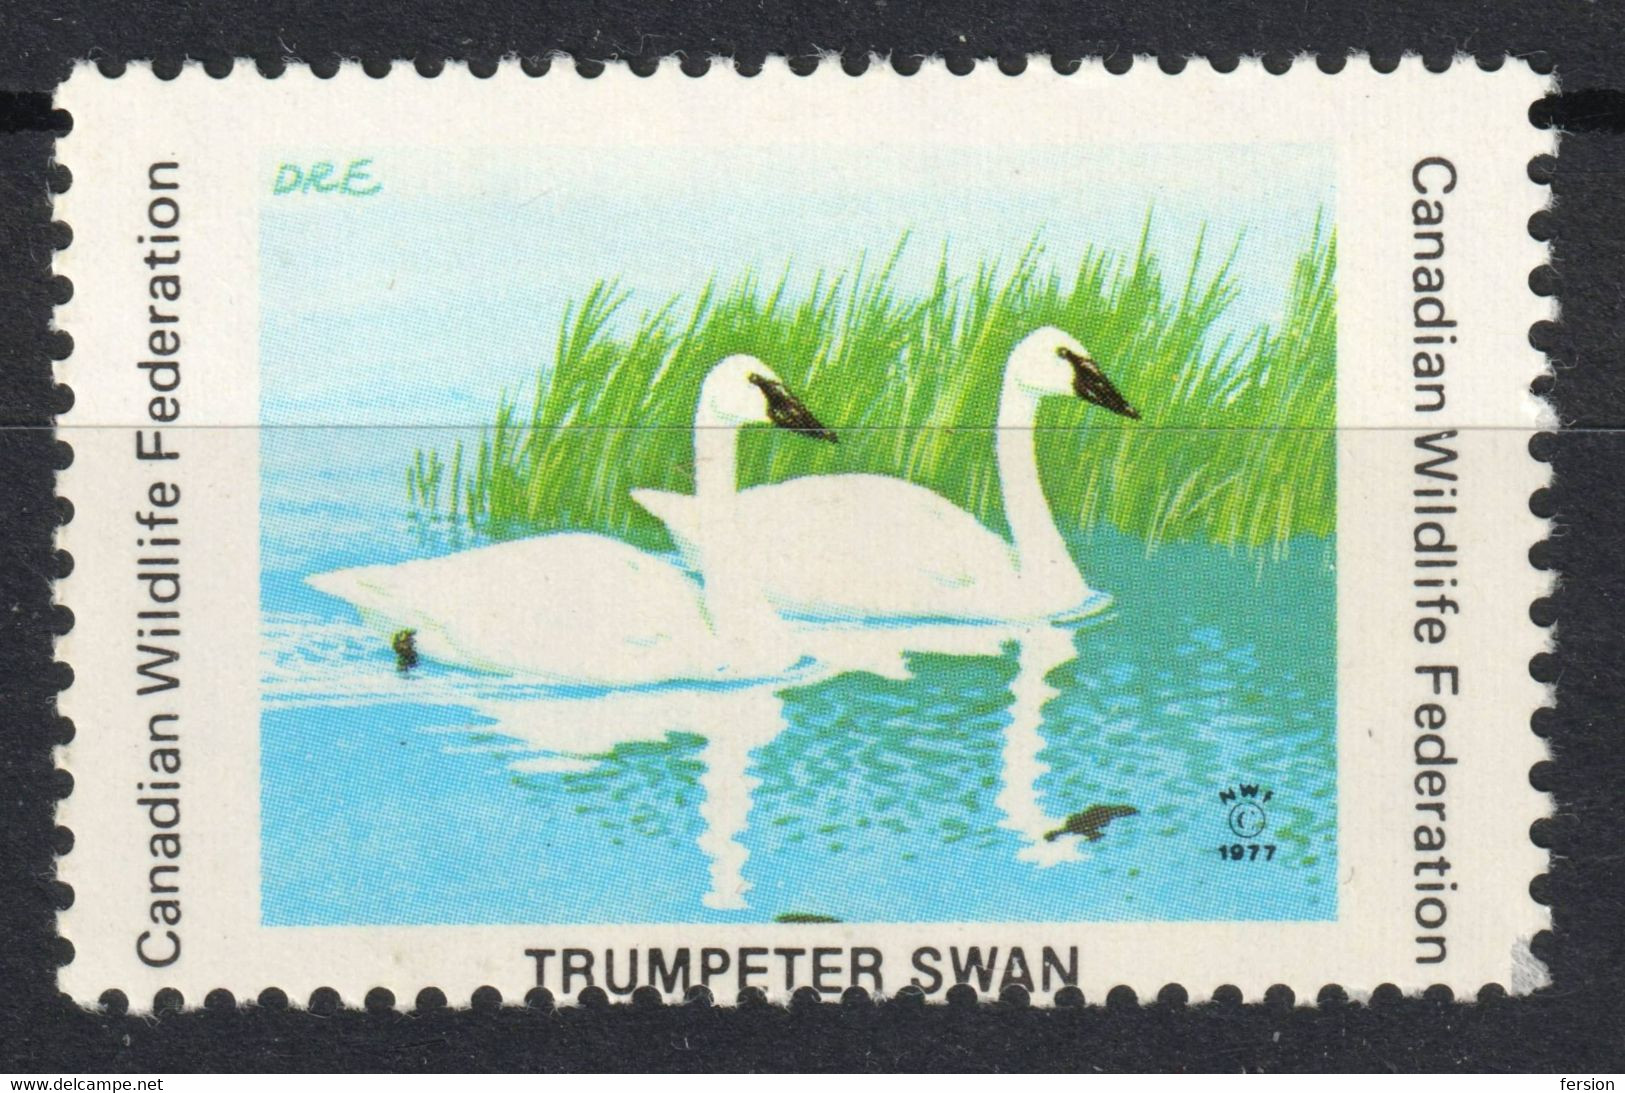 SWAN Trumpeter Bird - Canadian Wildlife Federation 1977 CANADA Charity LABEL CINDERELLA VIGNETTE - Schwäne